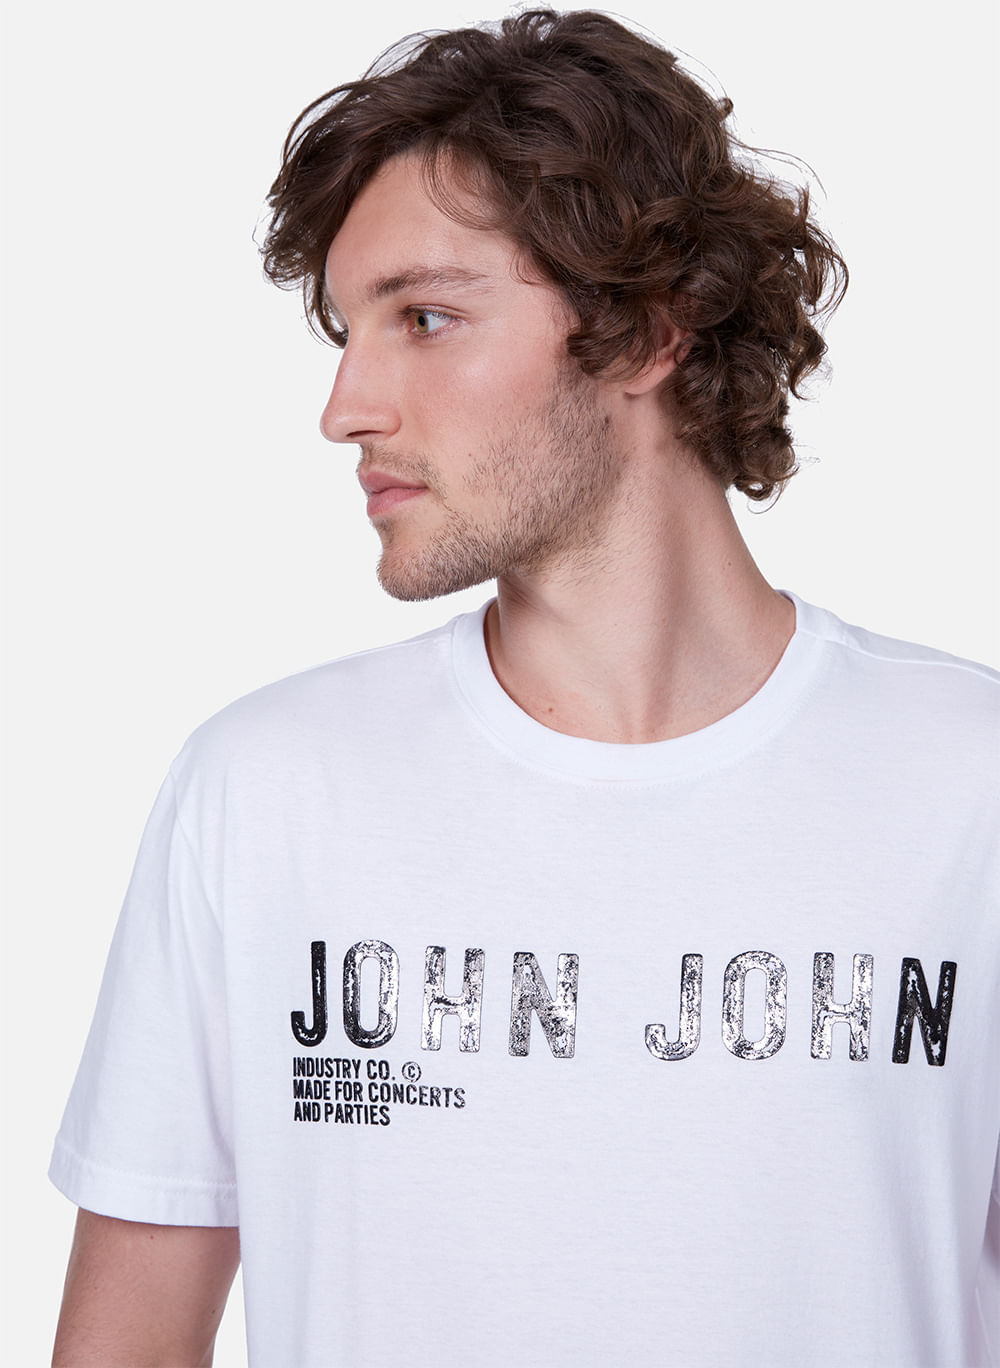 Camiseta John John City Branca - Compre Agora